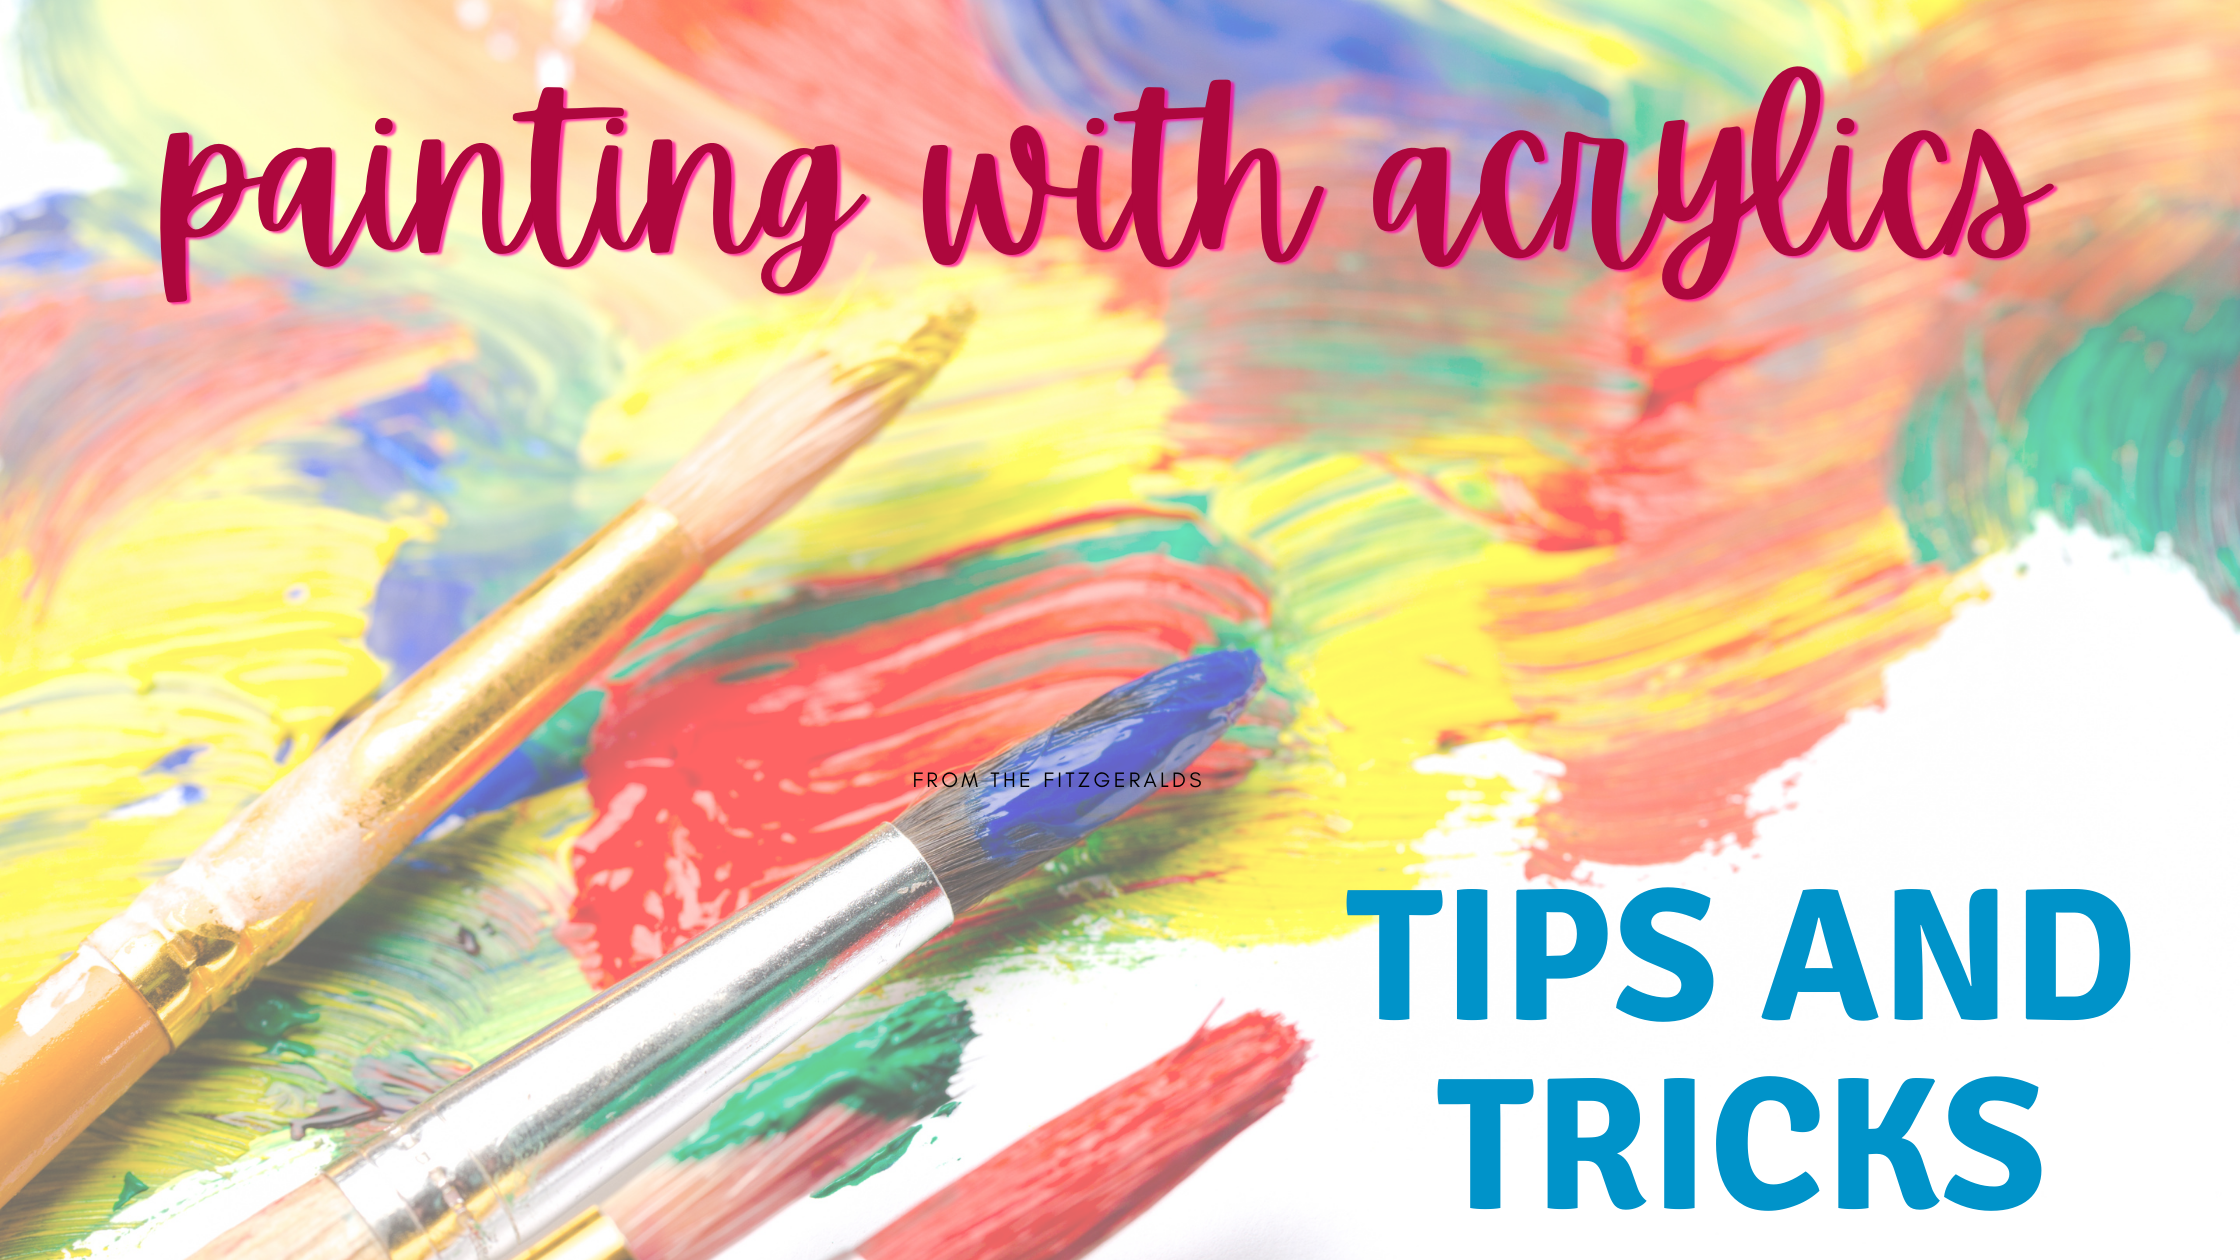 Making Brushstrokes, 7 tips to teach kids